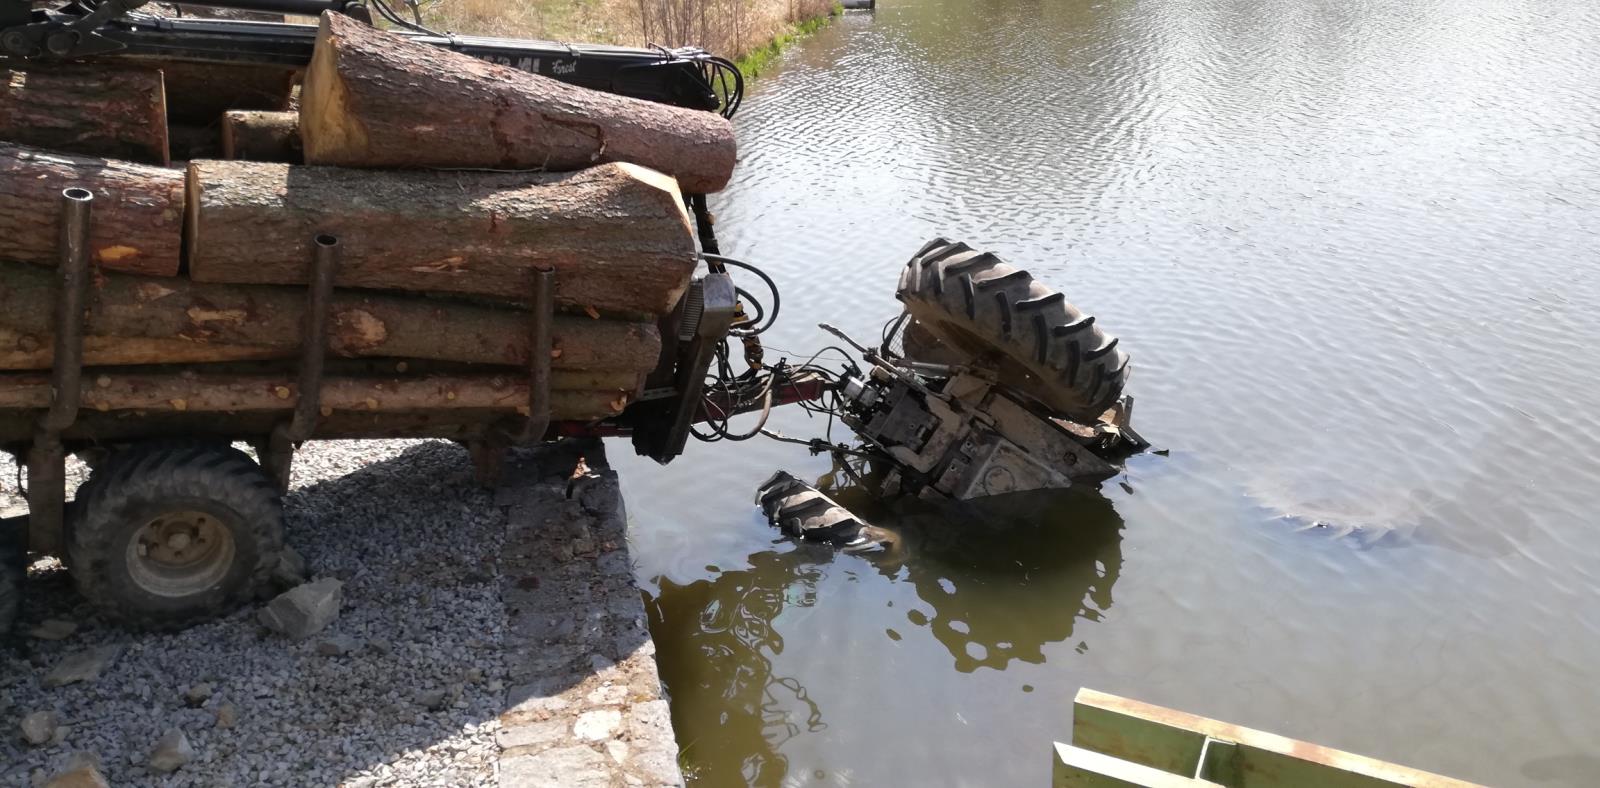 Traktor v rybníce, Vožice - 17. 4. 2020 (1).jpg